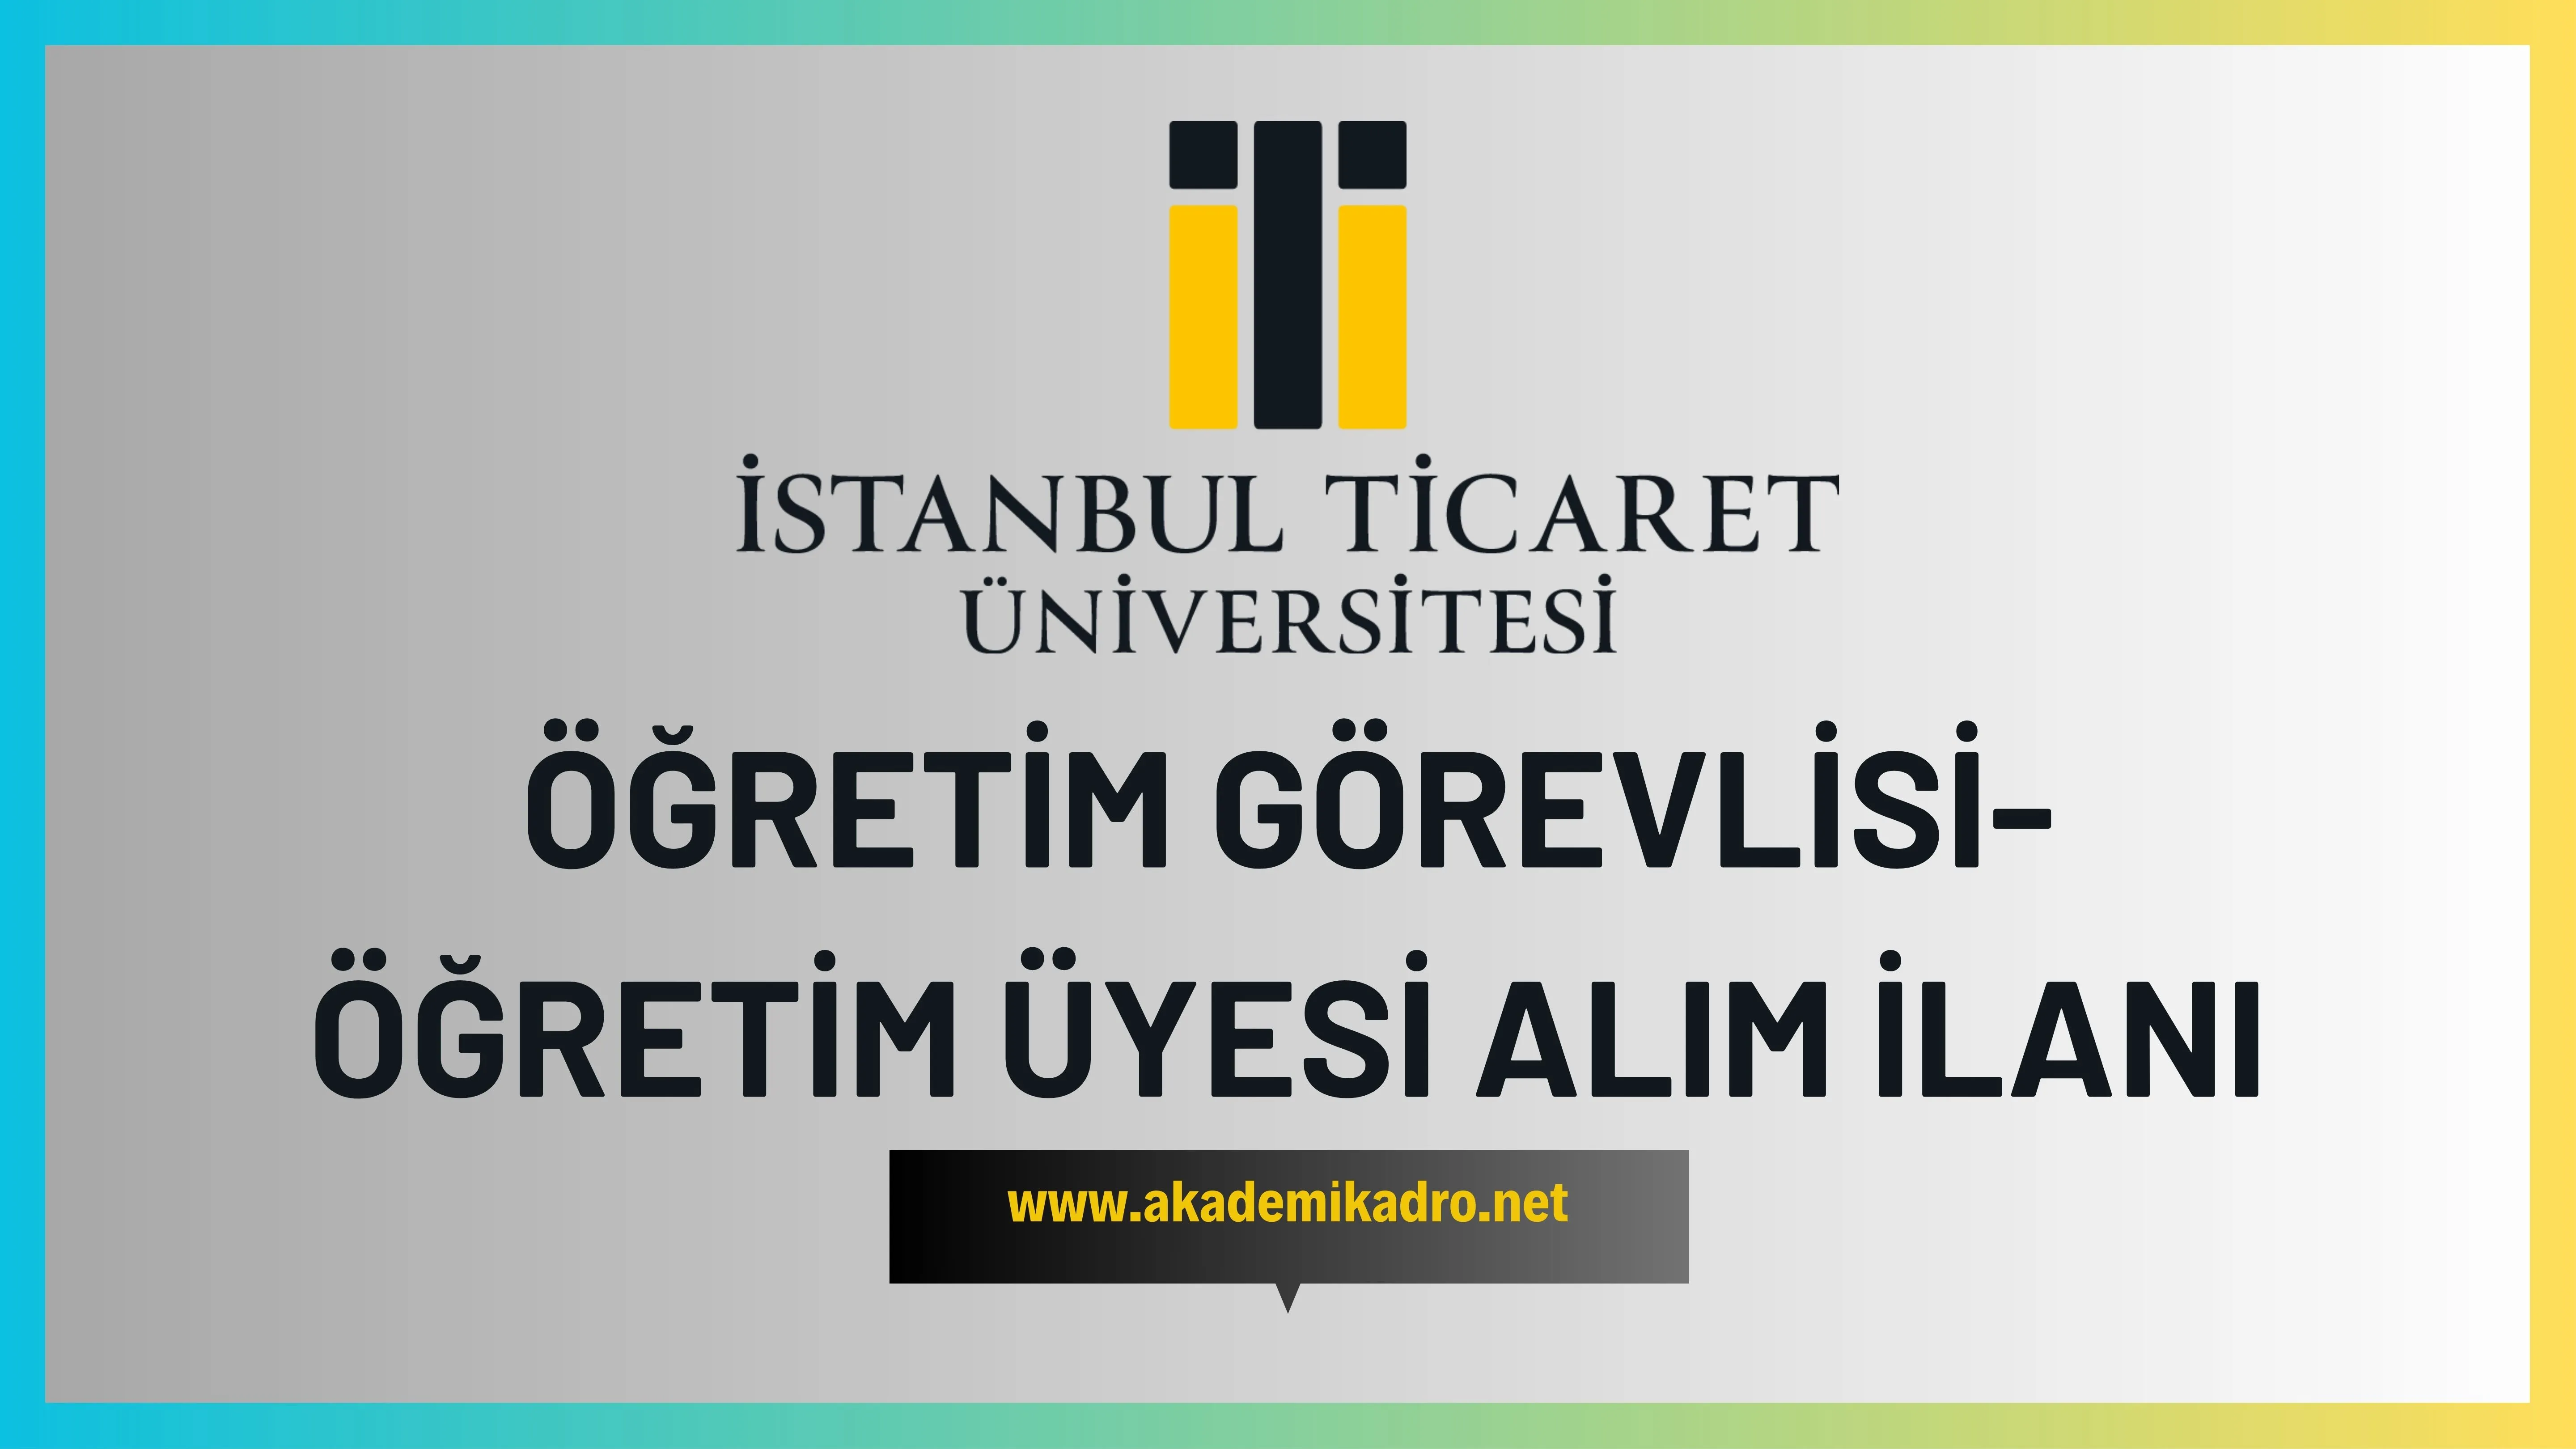 İstanbul Ticaret Üniversitesi 2 Öğretim görevlisi ve 9 Öğretim üyesi alacak.